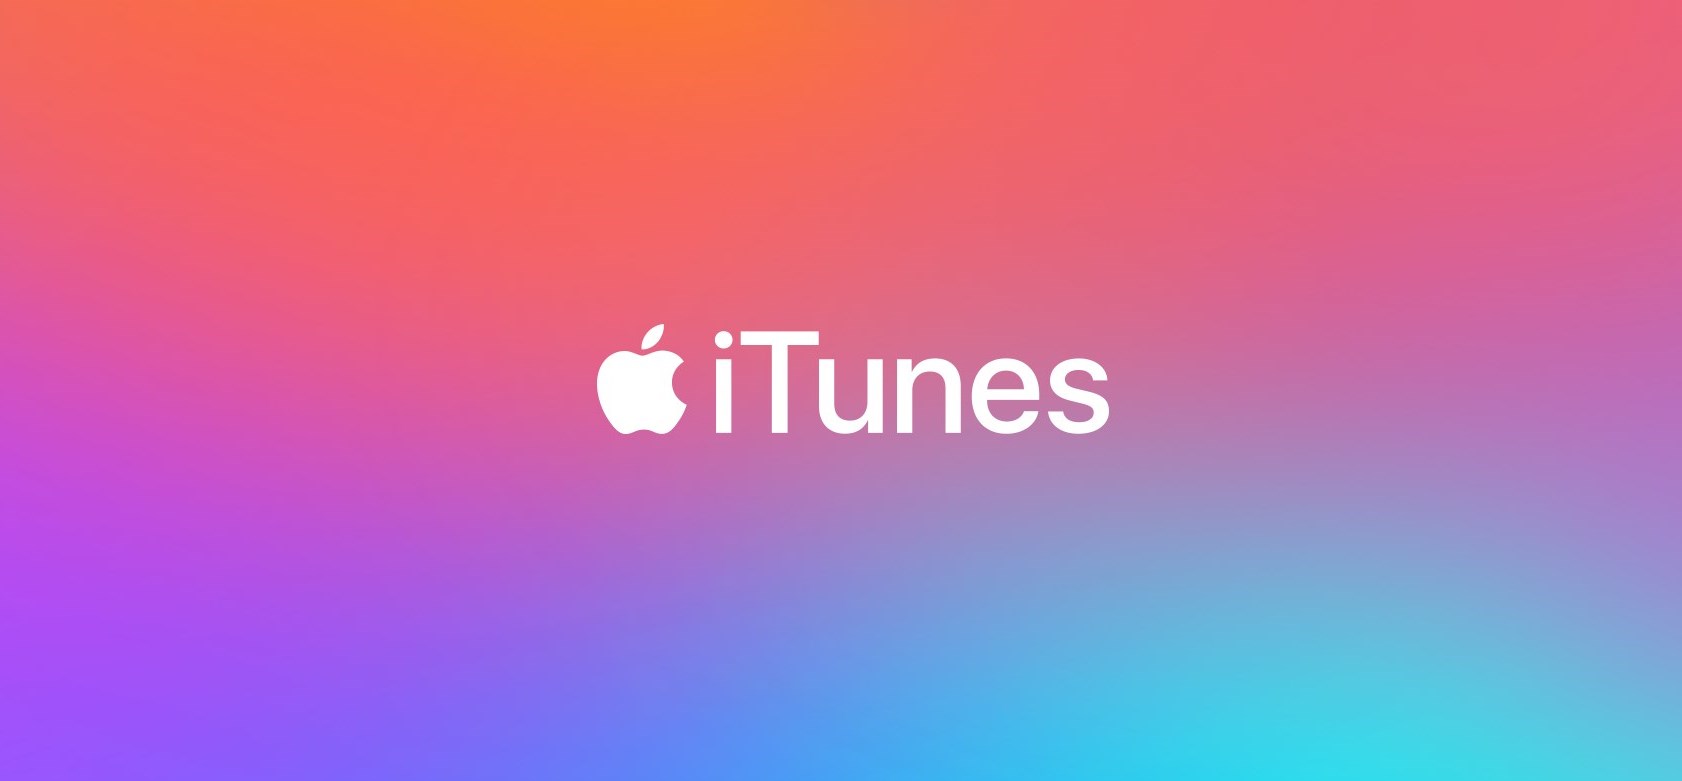 Apple’ın Efsane Müzik Uygulaması iTunes Tarihe Karışıyor